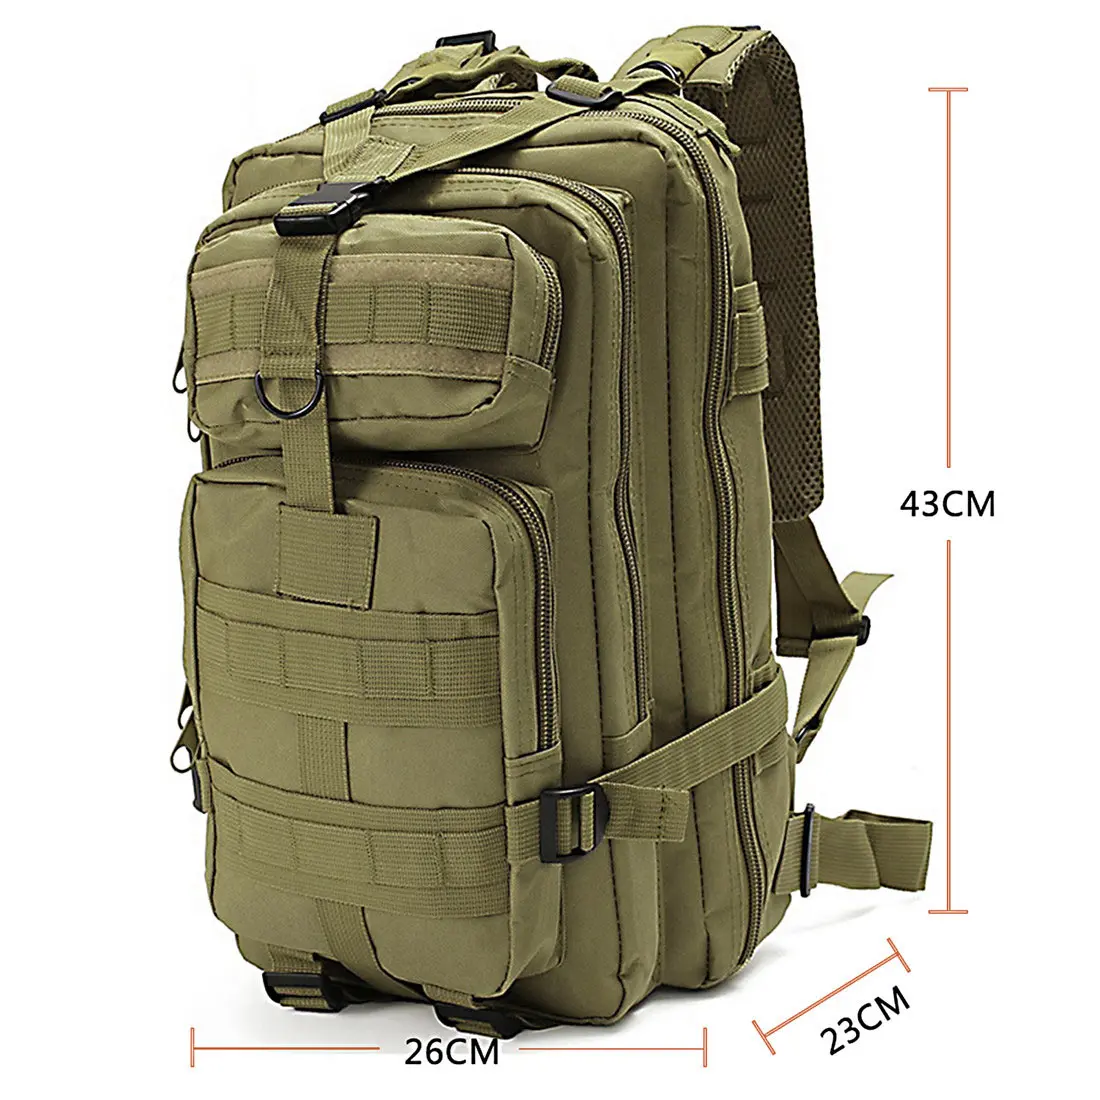 1000D нейлоновый тактический военный рюкзак, водонепроницаемая армейская сумка, уличный спортивный рюкзак для кемпинга, туризма, рыбалки, охоты, 30L сумка